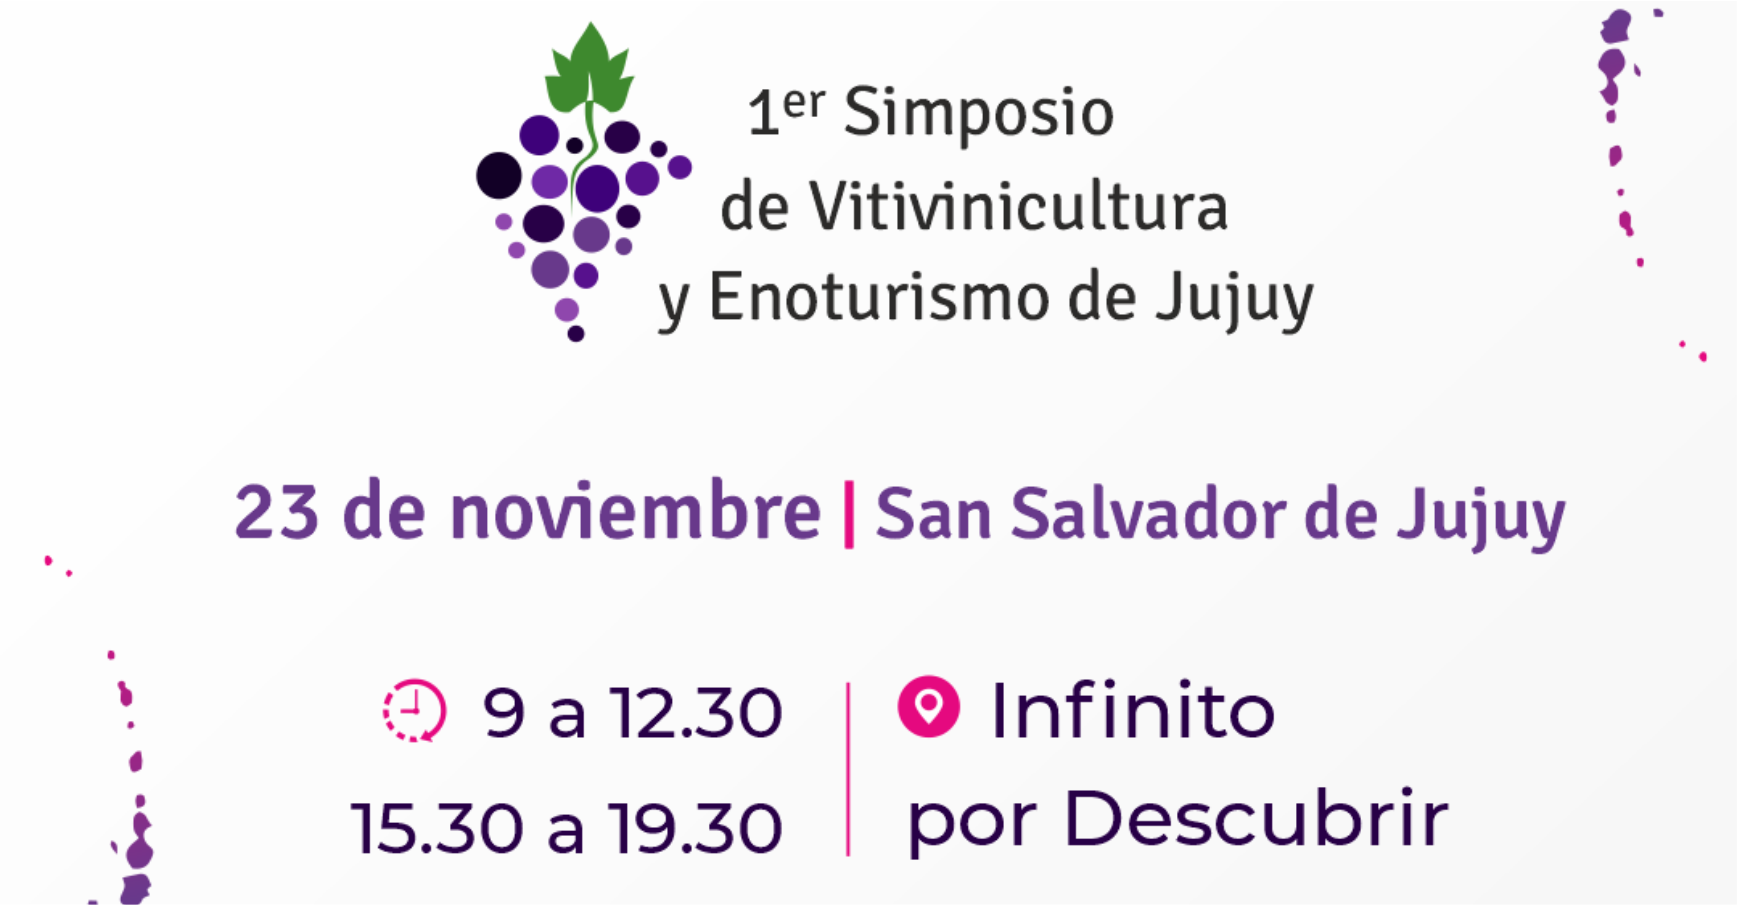 Invitan a participar del "1°Simposio de Vitivinicultura y Enoturismo de Jujuy"